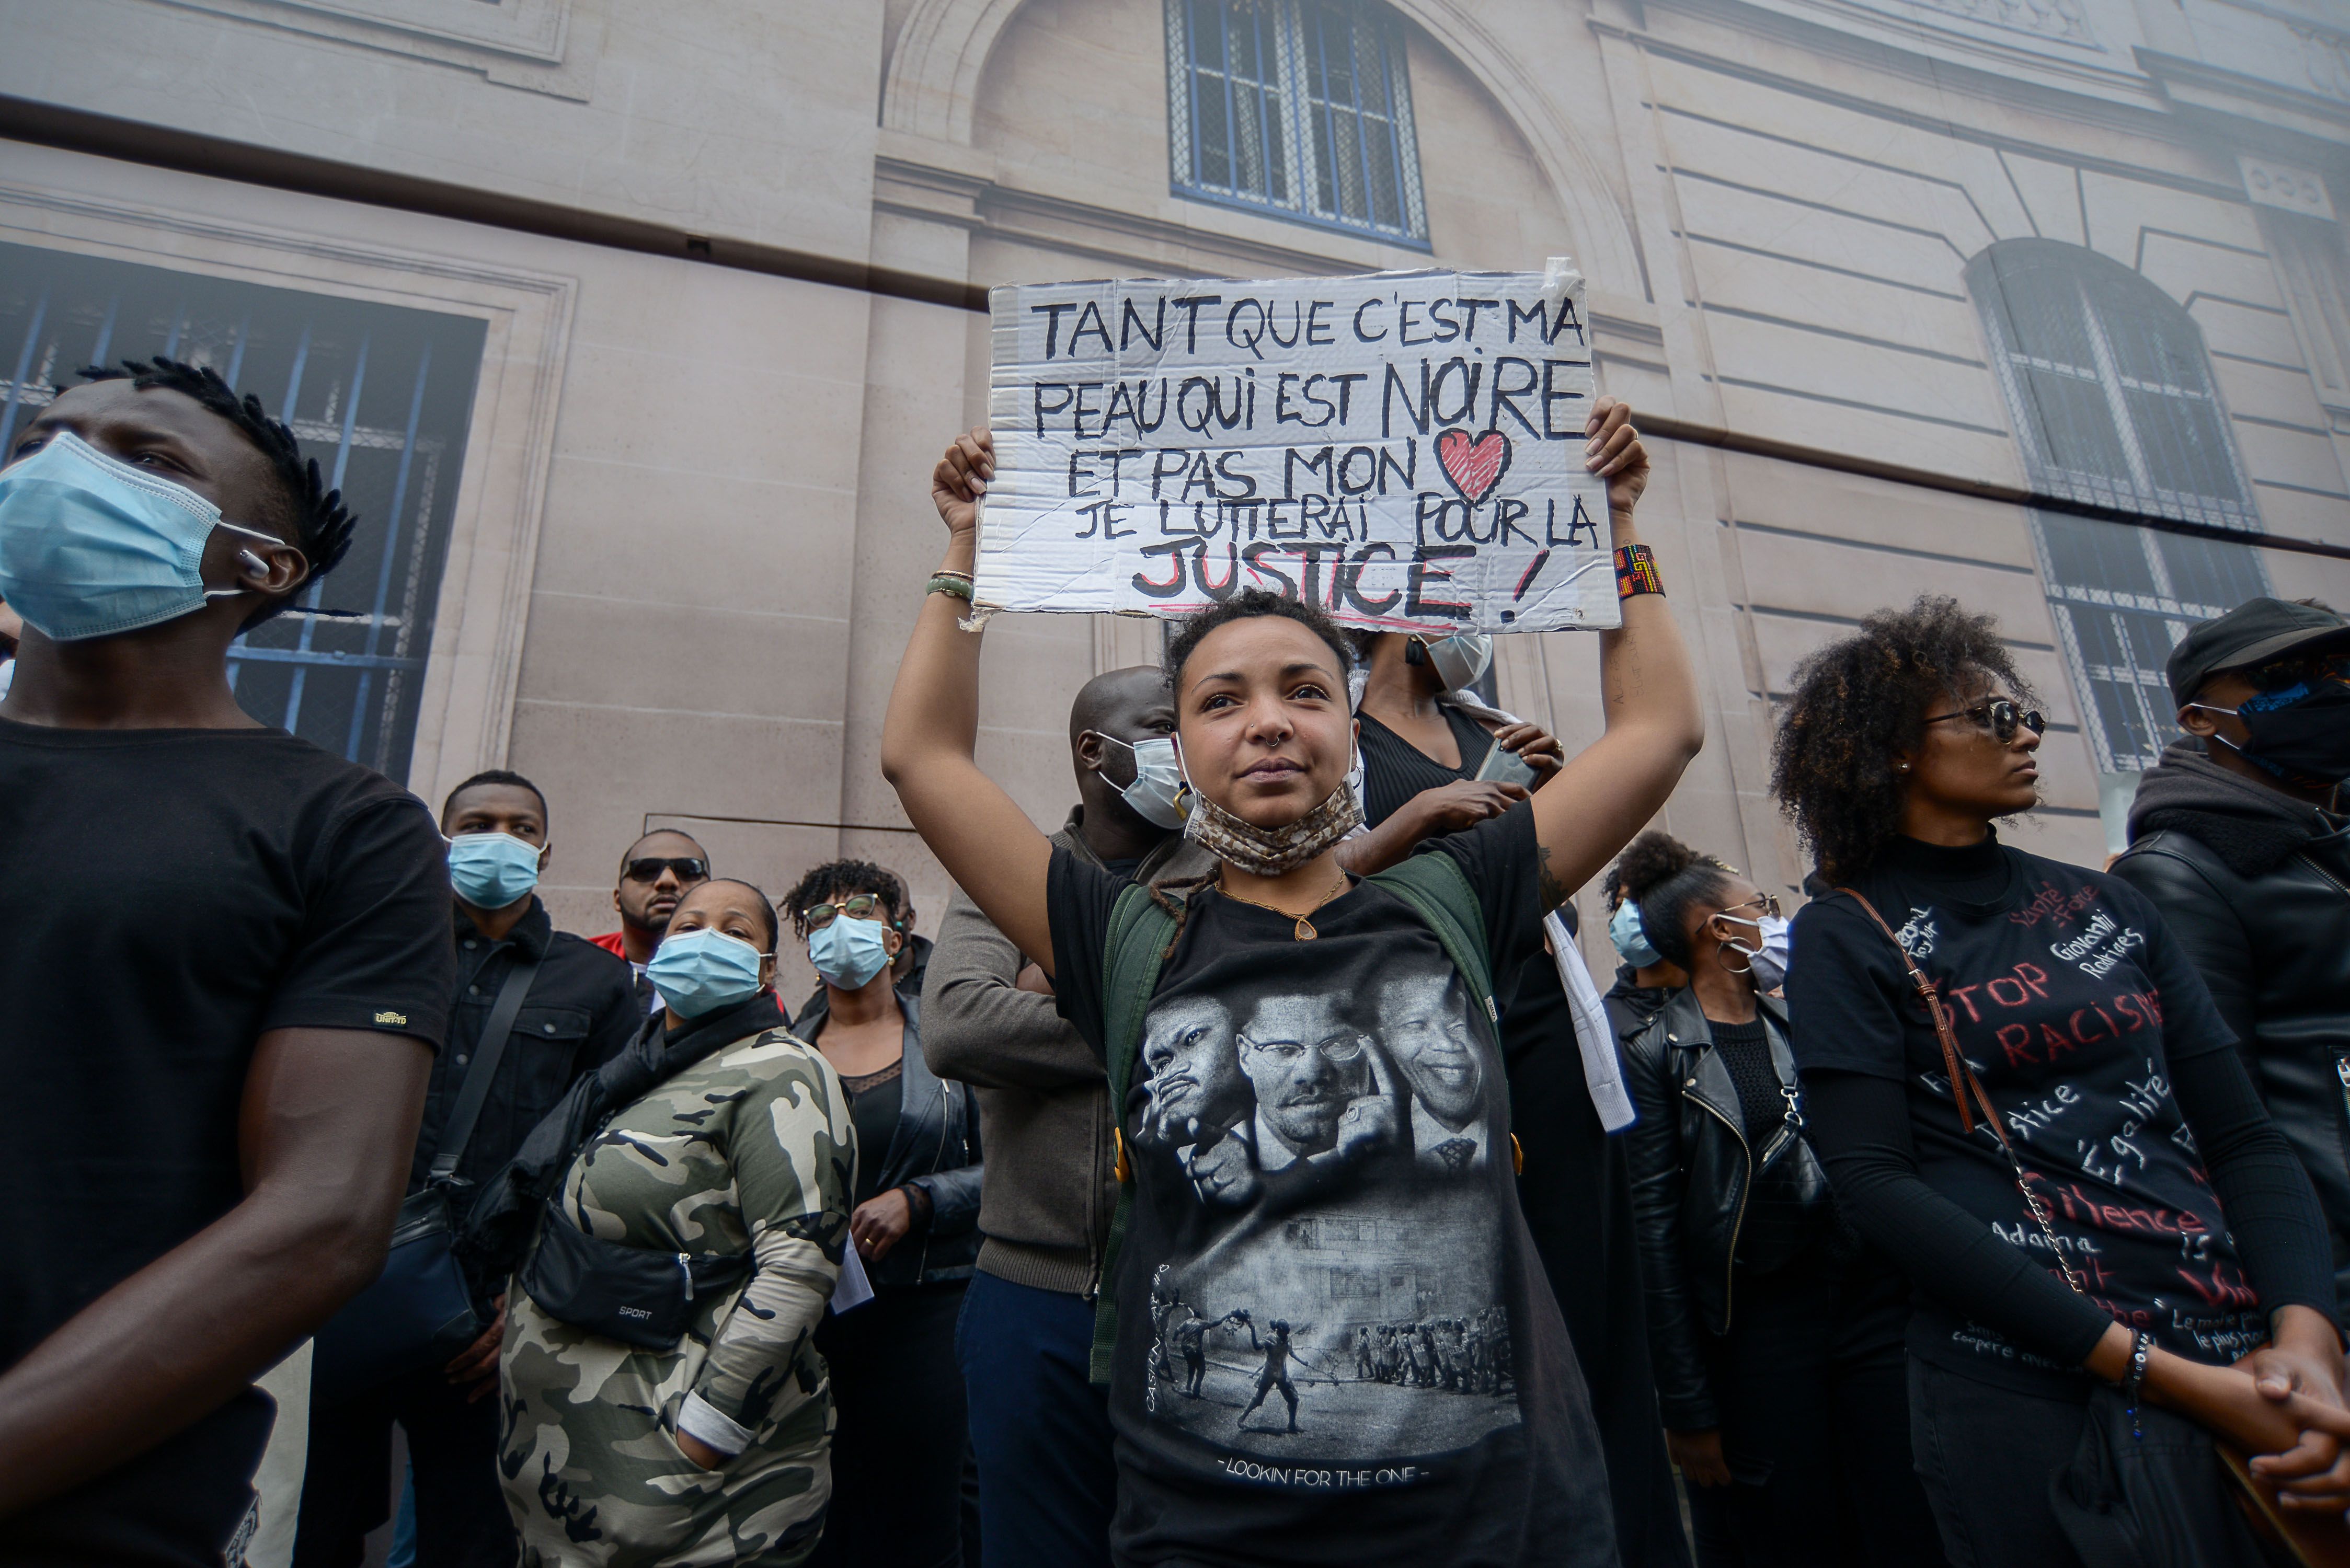 Un grand nombre de personnes se sont rassemblées le 6 juin 2020 place de la Concorde,à Paris, pour dénoncer les violences policières en France, réclamant justice pour Adama Traoré, justice pour tous et brandissant des pancartes Black Lives Matter.  